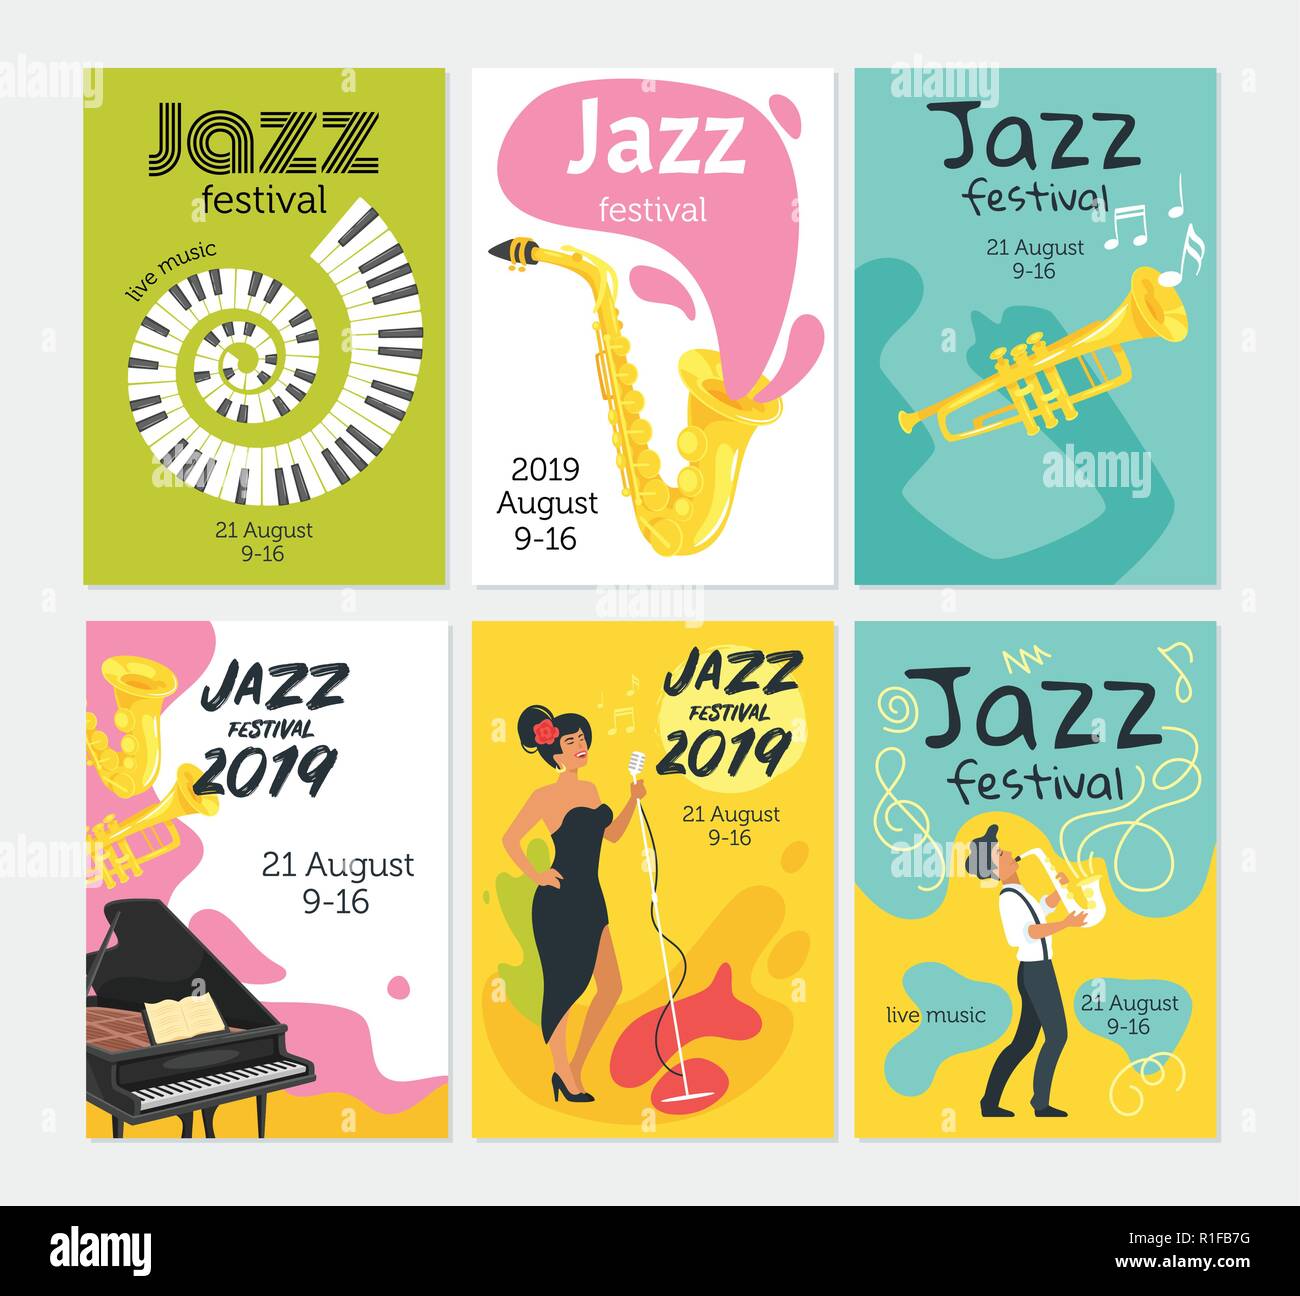 Jazz Plakat Hintergrund Vektor Einrichten Vorlage Fur Festival Veranstaltung Mit Musikinstrumenten Und Sanger Charakter Vertikale Komposition Stock Vektorgrafik Alamy